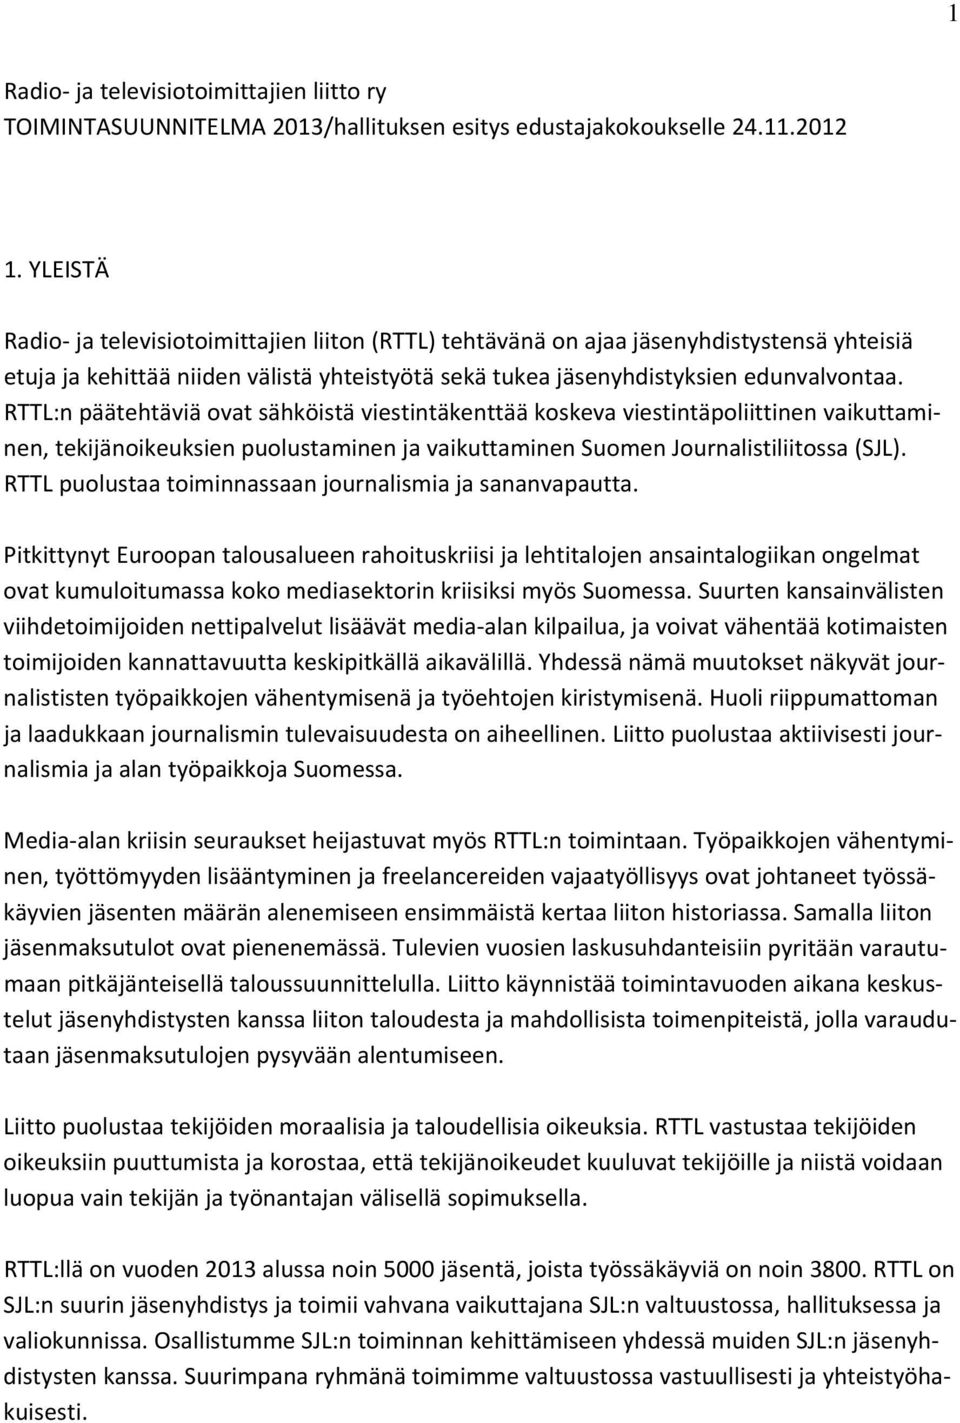 RTTL:n päätehtäviä ovat sähköistä viestintäkenttää koskeva viestintäpoliittinen vaikuttaminen, tekijänoikeuksien puolustaminen ja vaikuttaminen Suomen Journalistiliitossa (SJL).